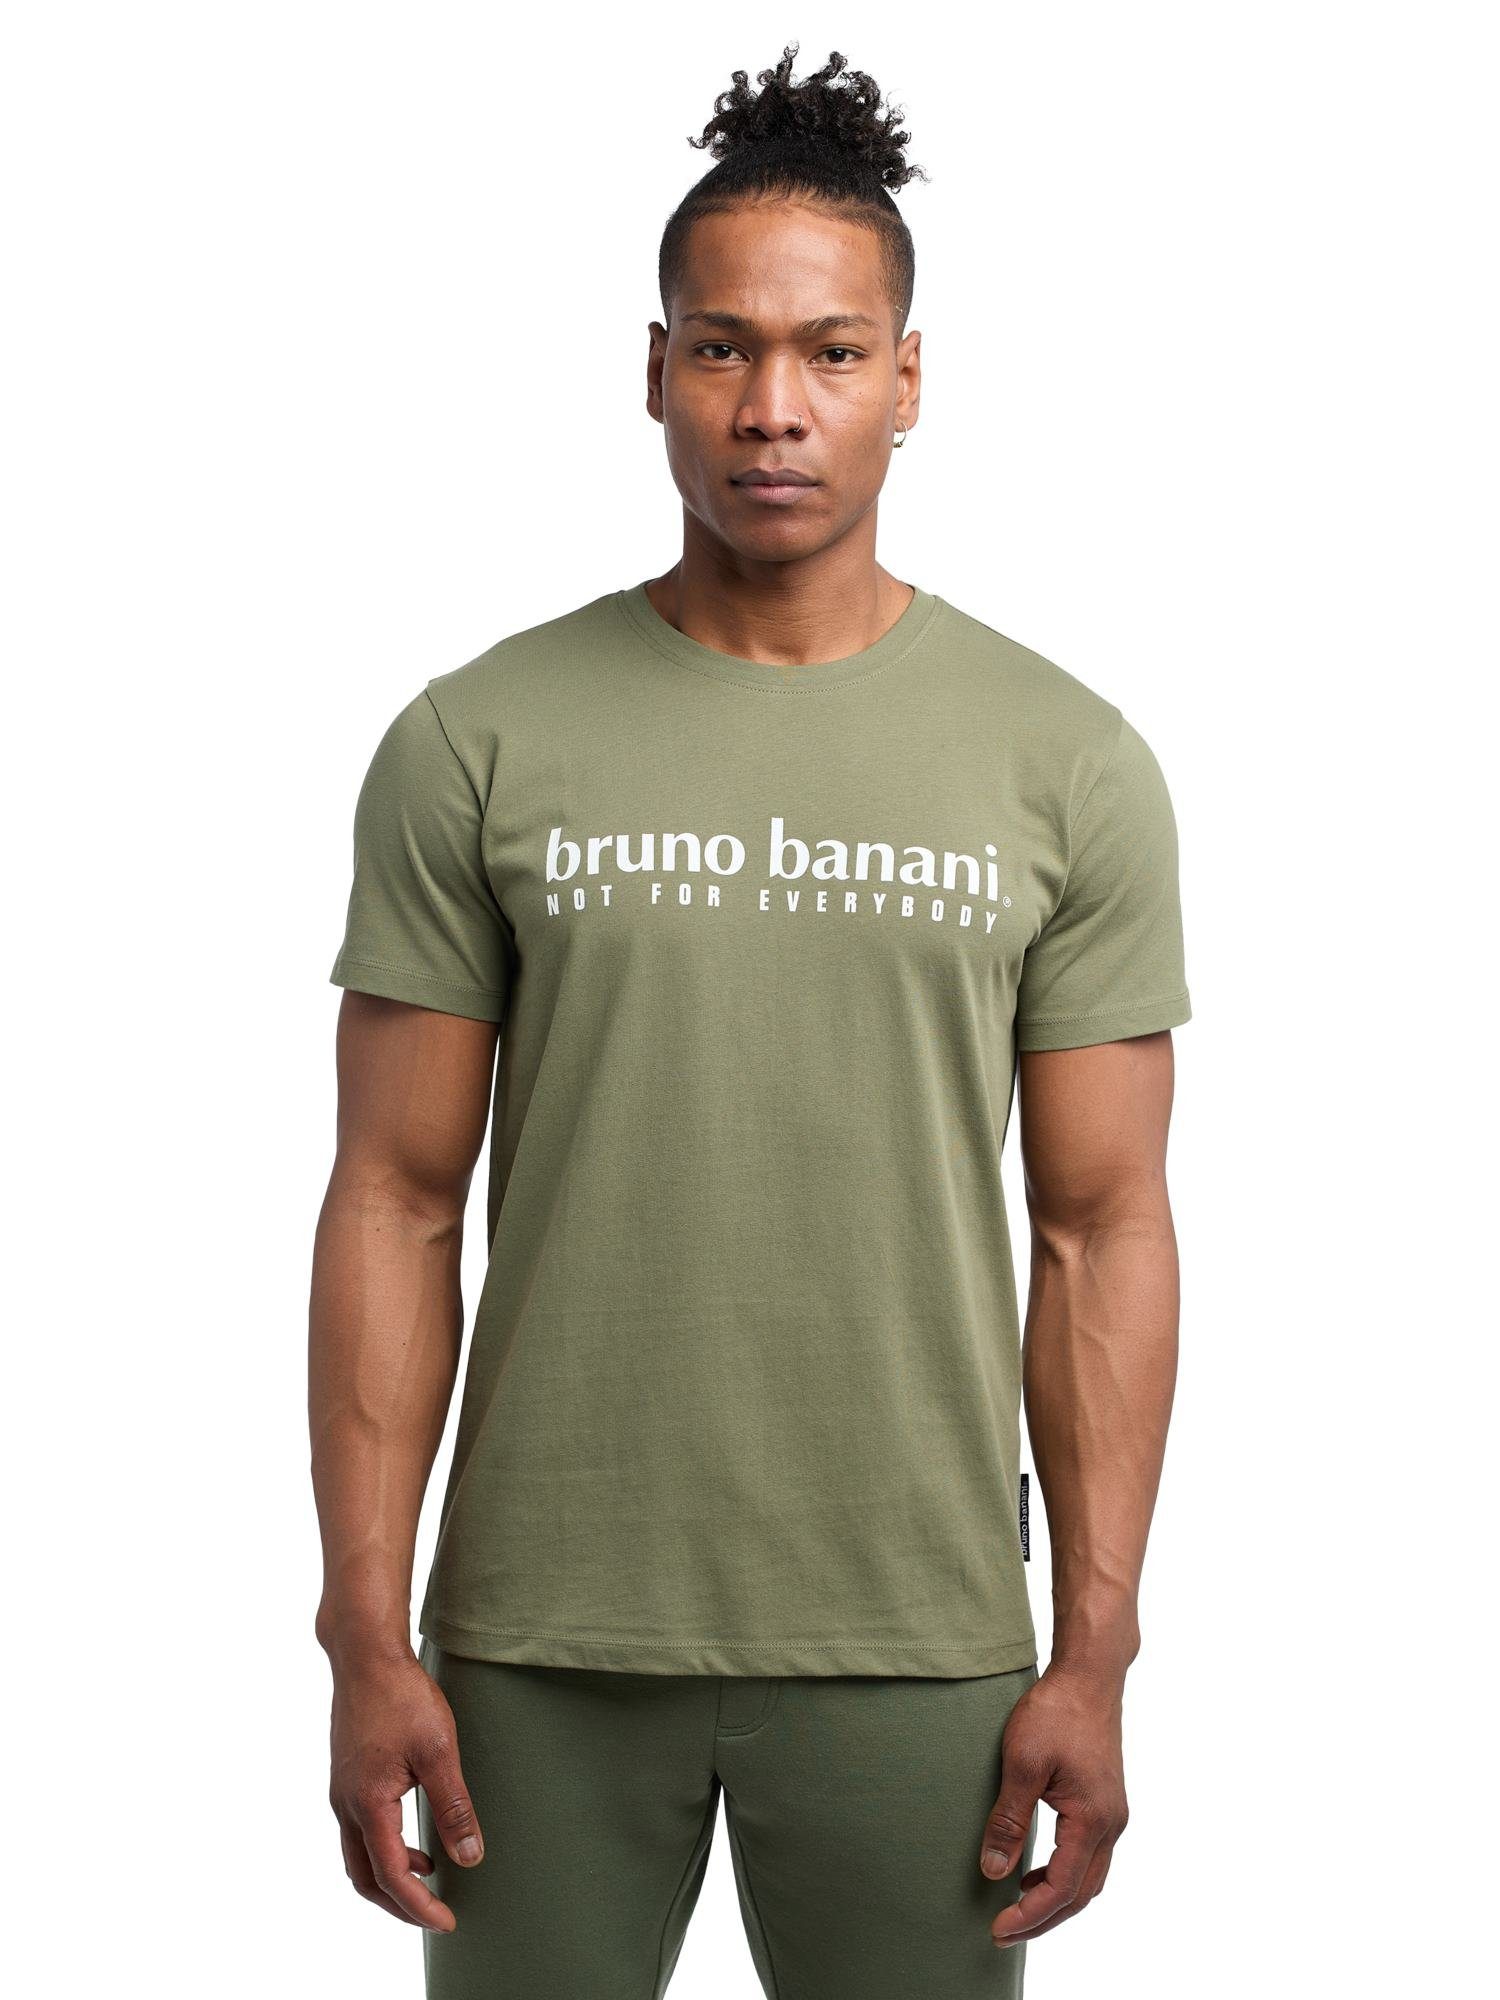 Bruno Banani T-Shirt Abbott